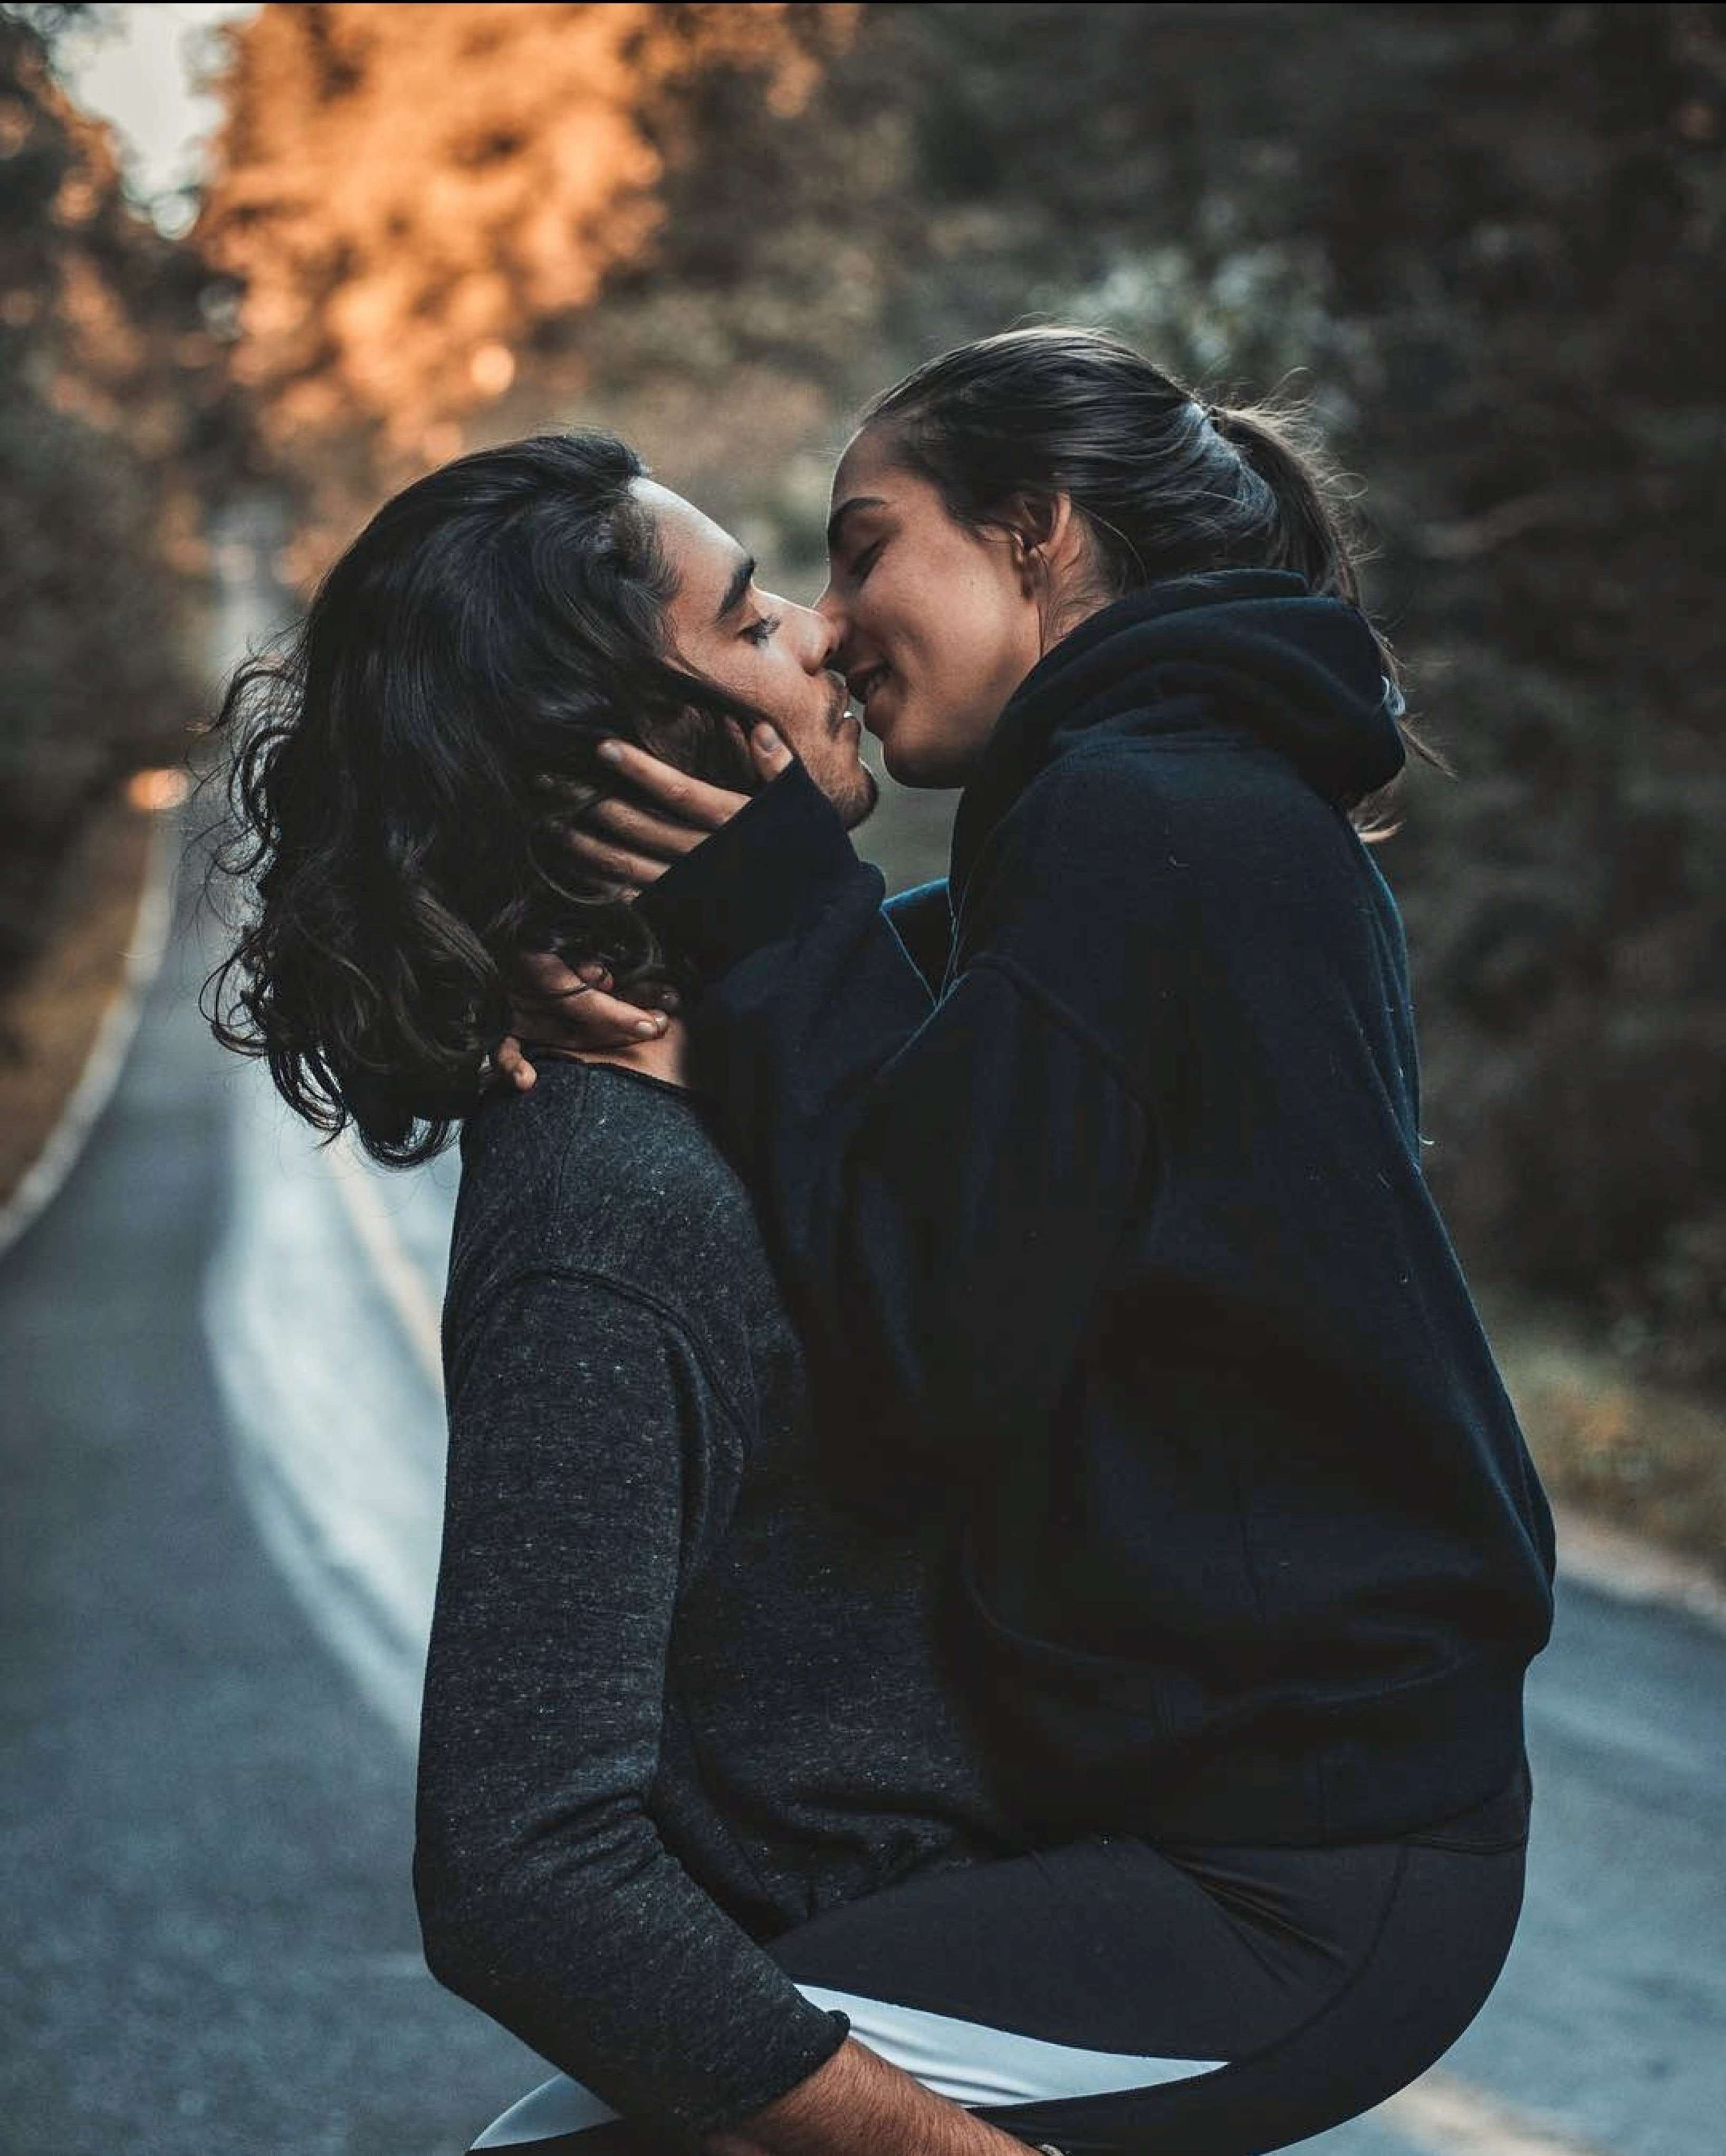 мужчина и женщина целуются и стоят на дороге